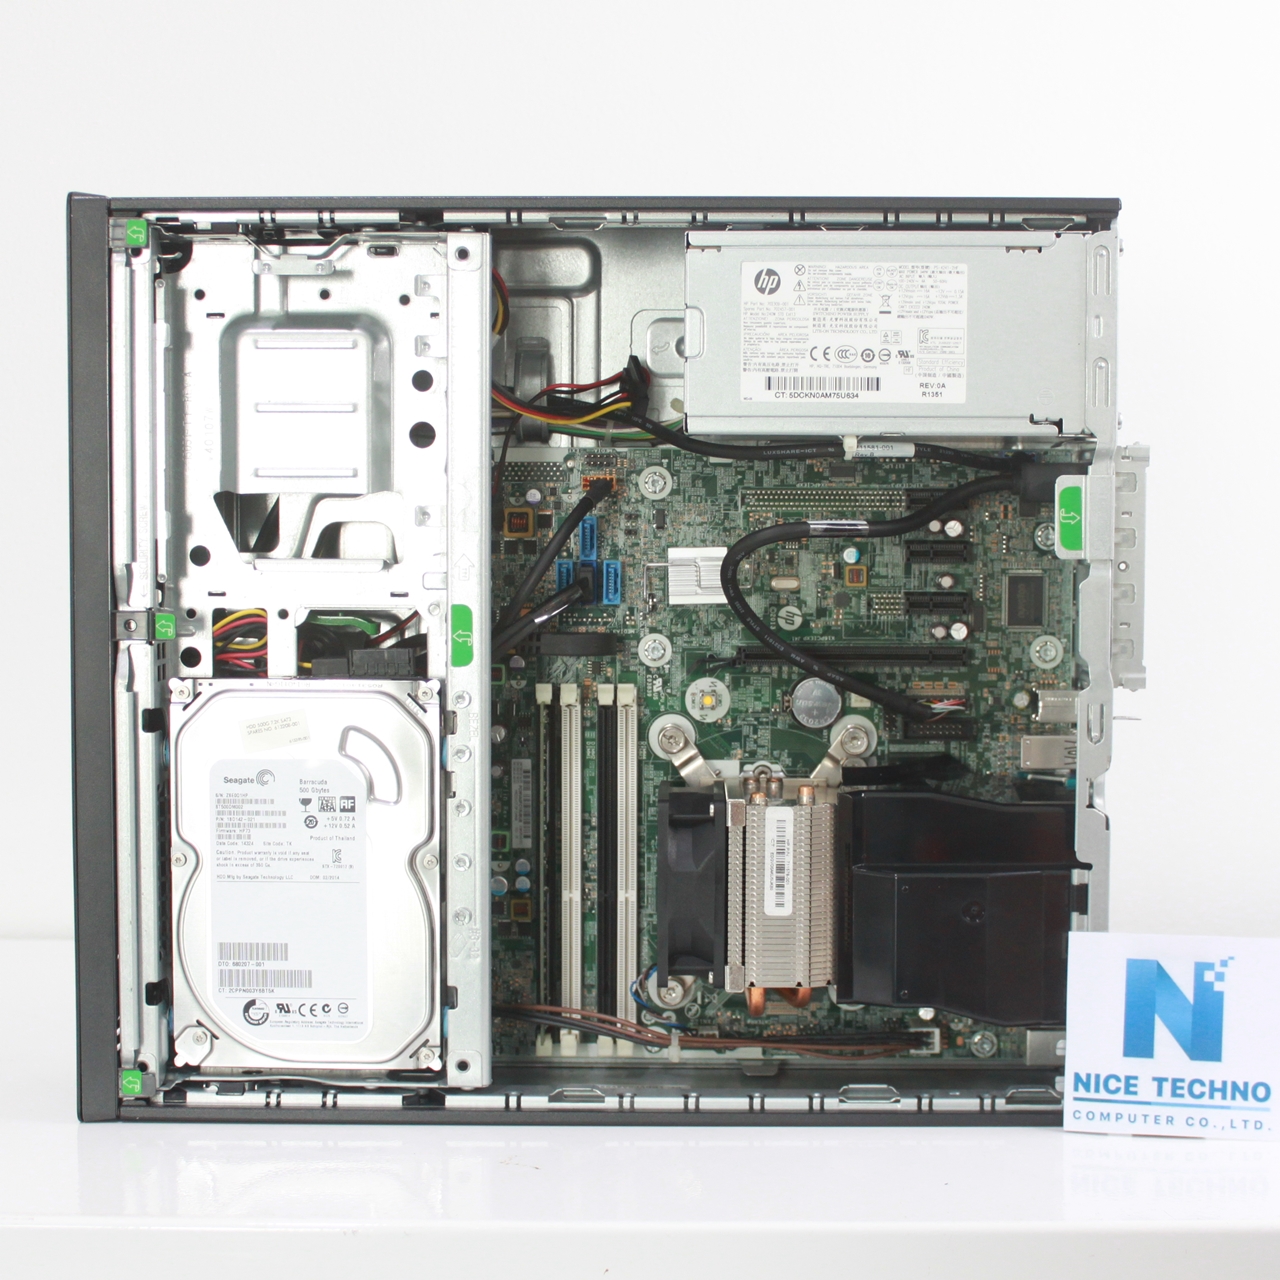 รายละเอียดเพิ่มเติมเกี่ยวกับ HP Prodesk 600 G1 Pro SFF Core i5-4670 3.4 GHz/ RAM DDR3 4 GB/ HDD 500 GB/ LCD 19  HP/ Mouse, Keyboard